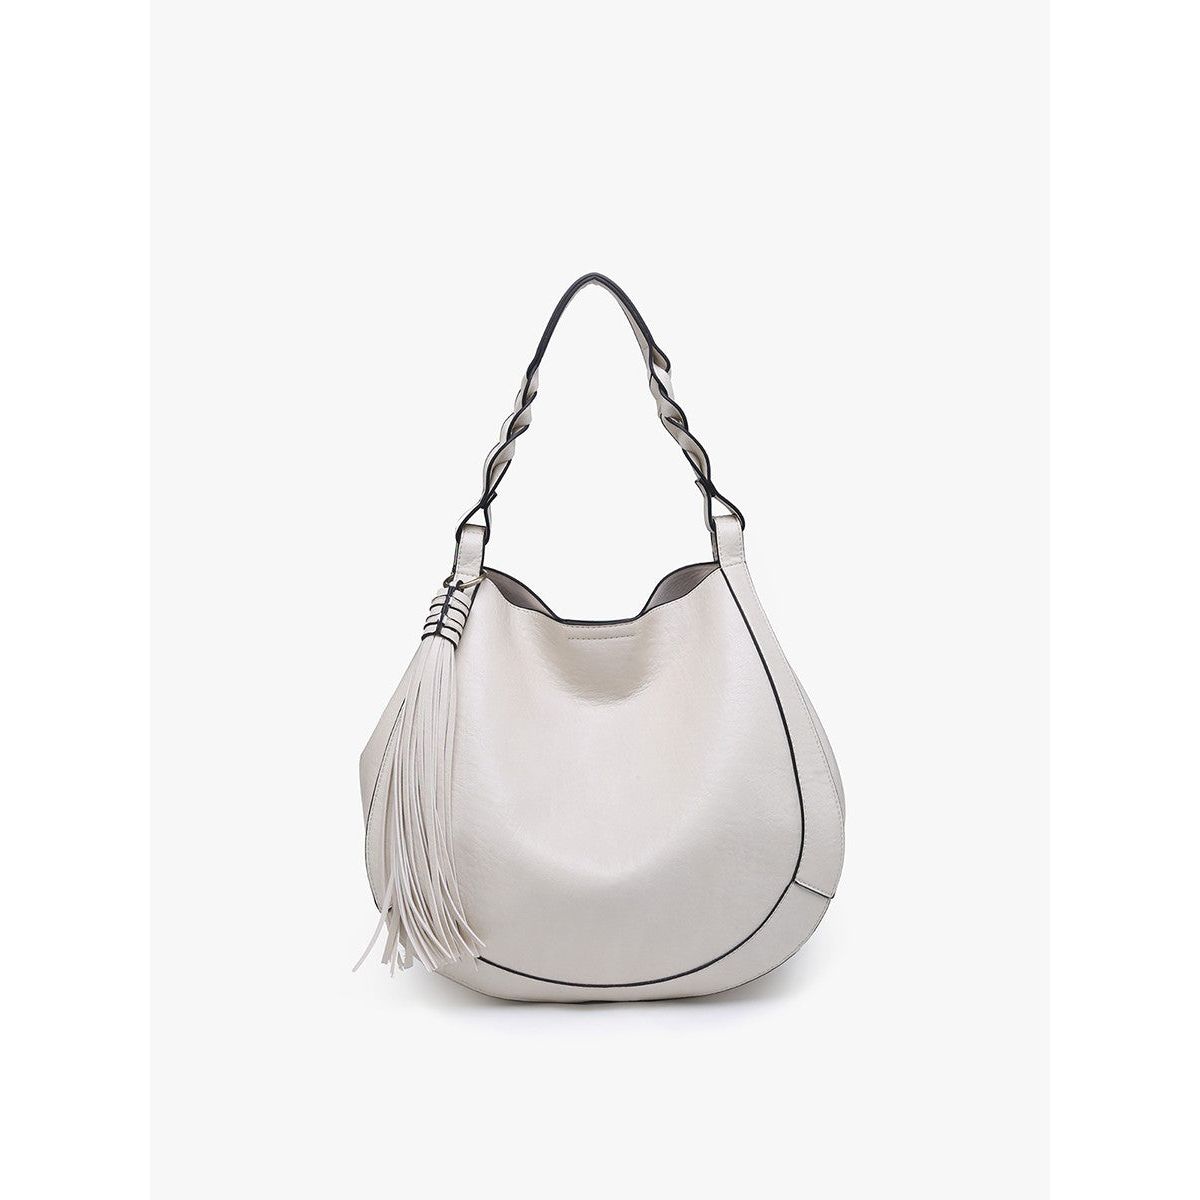 Eloise Handbag in White